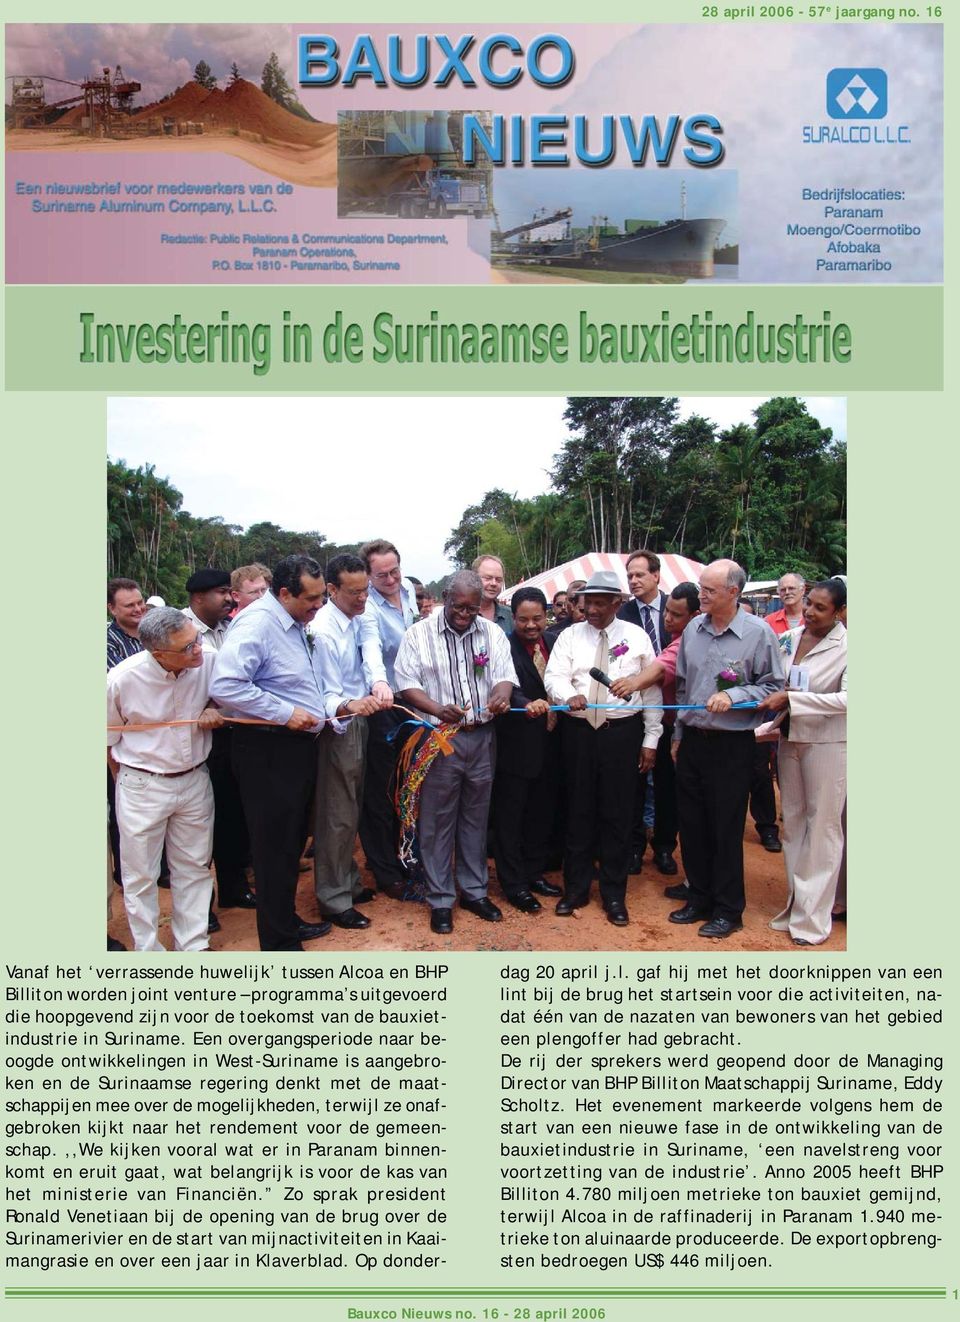 Een overgangsperiode naar beoogde ontwikkelingen in West-Suriname is aangebroken en de Surinaamse regering denkt met de maatschappijen mee over de mogelijkheden, terwijl ze onafgebroken kijkt naar